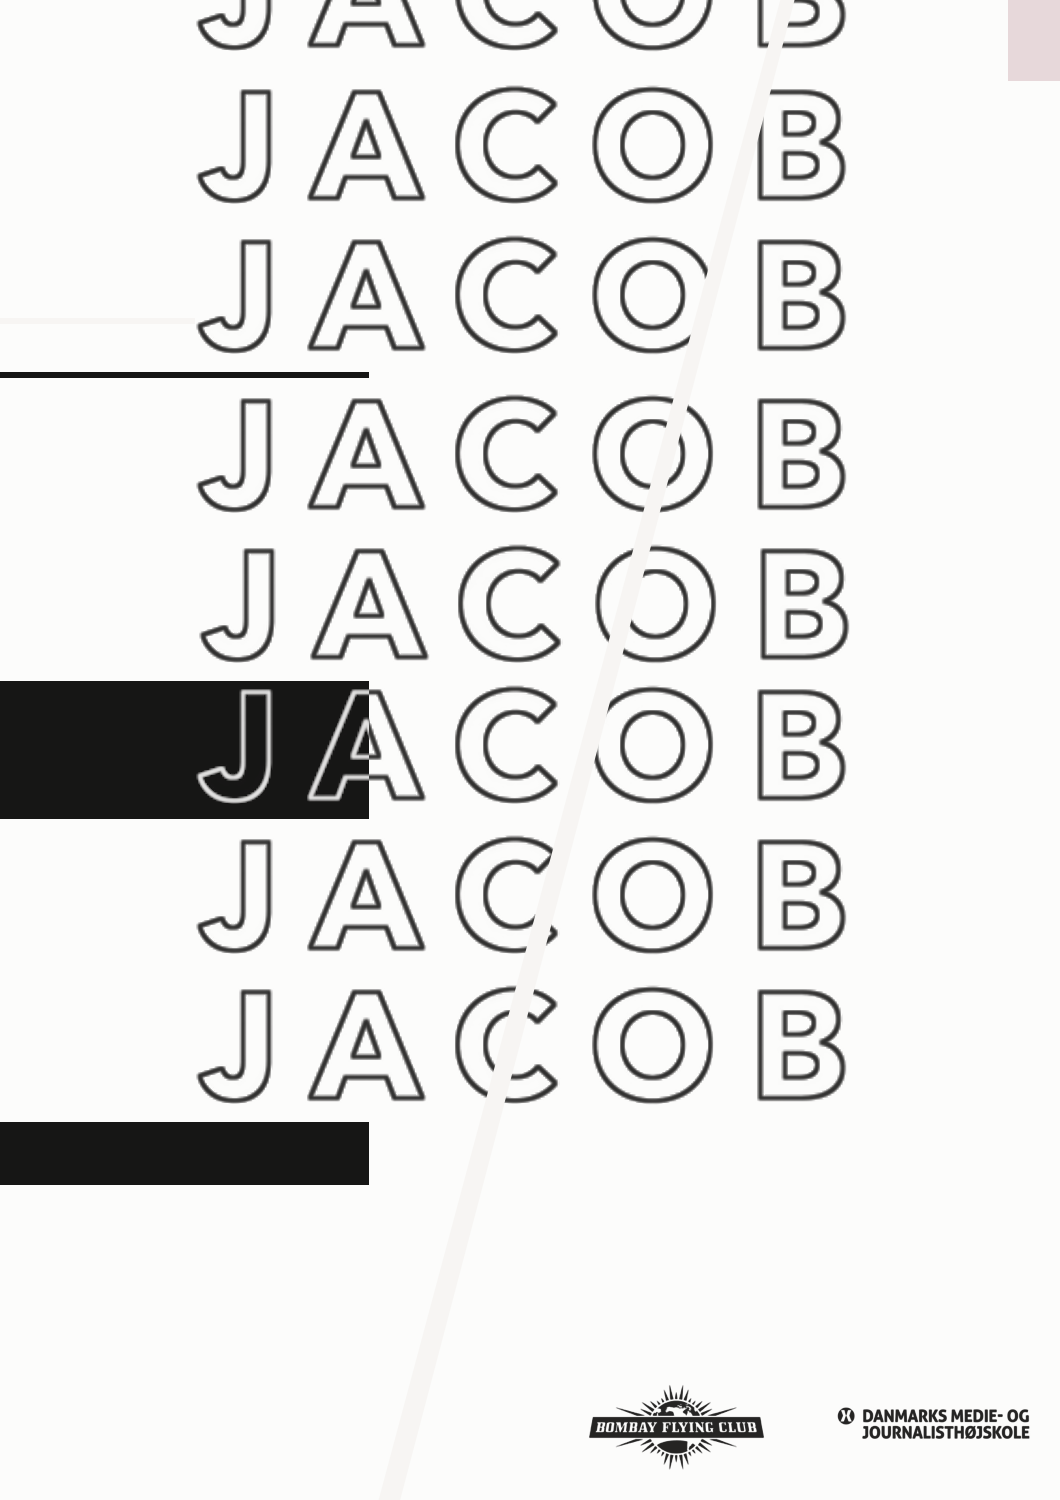 WEB-DOC: JACOB